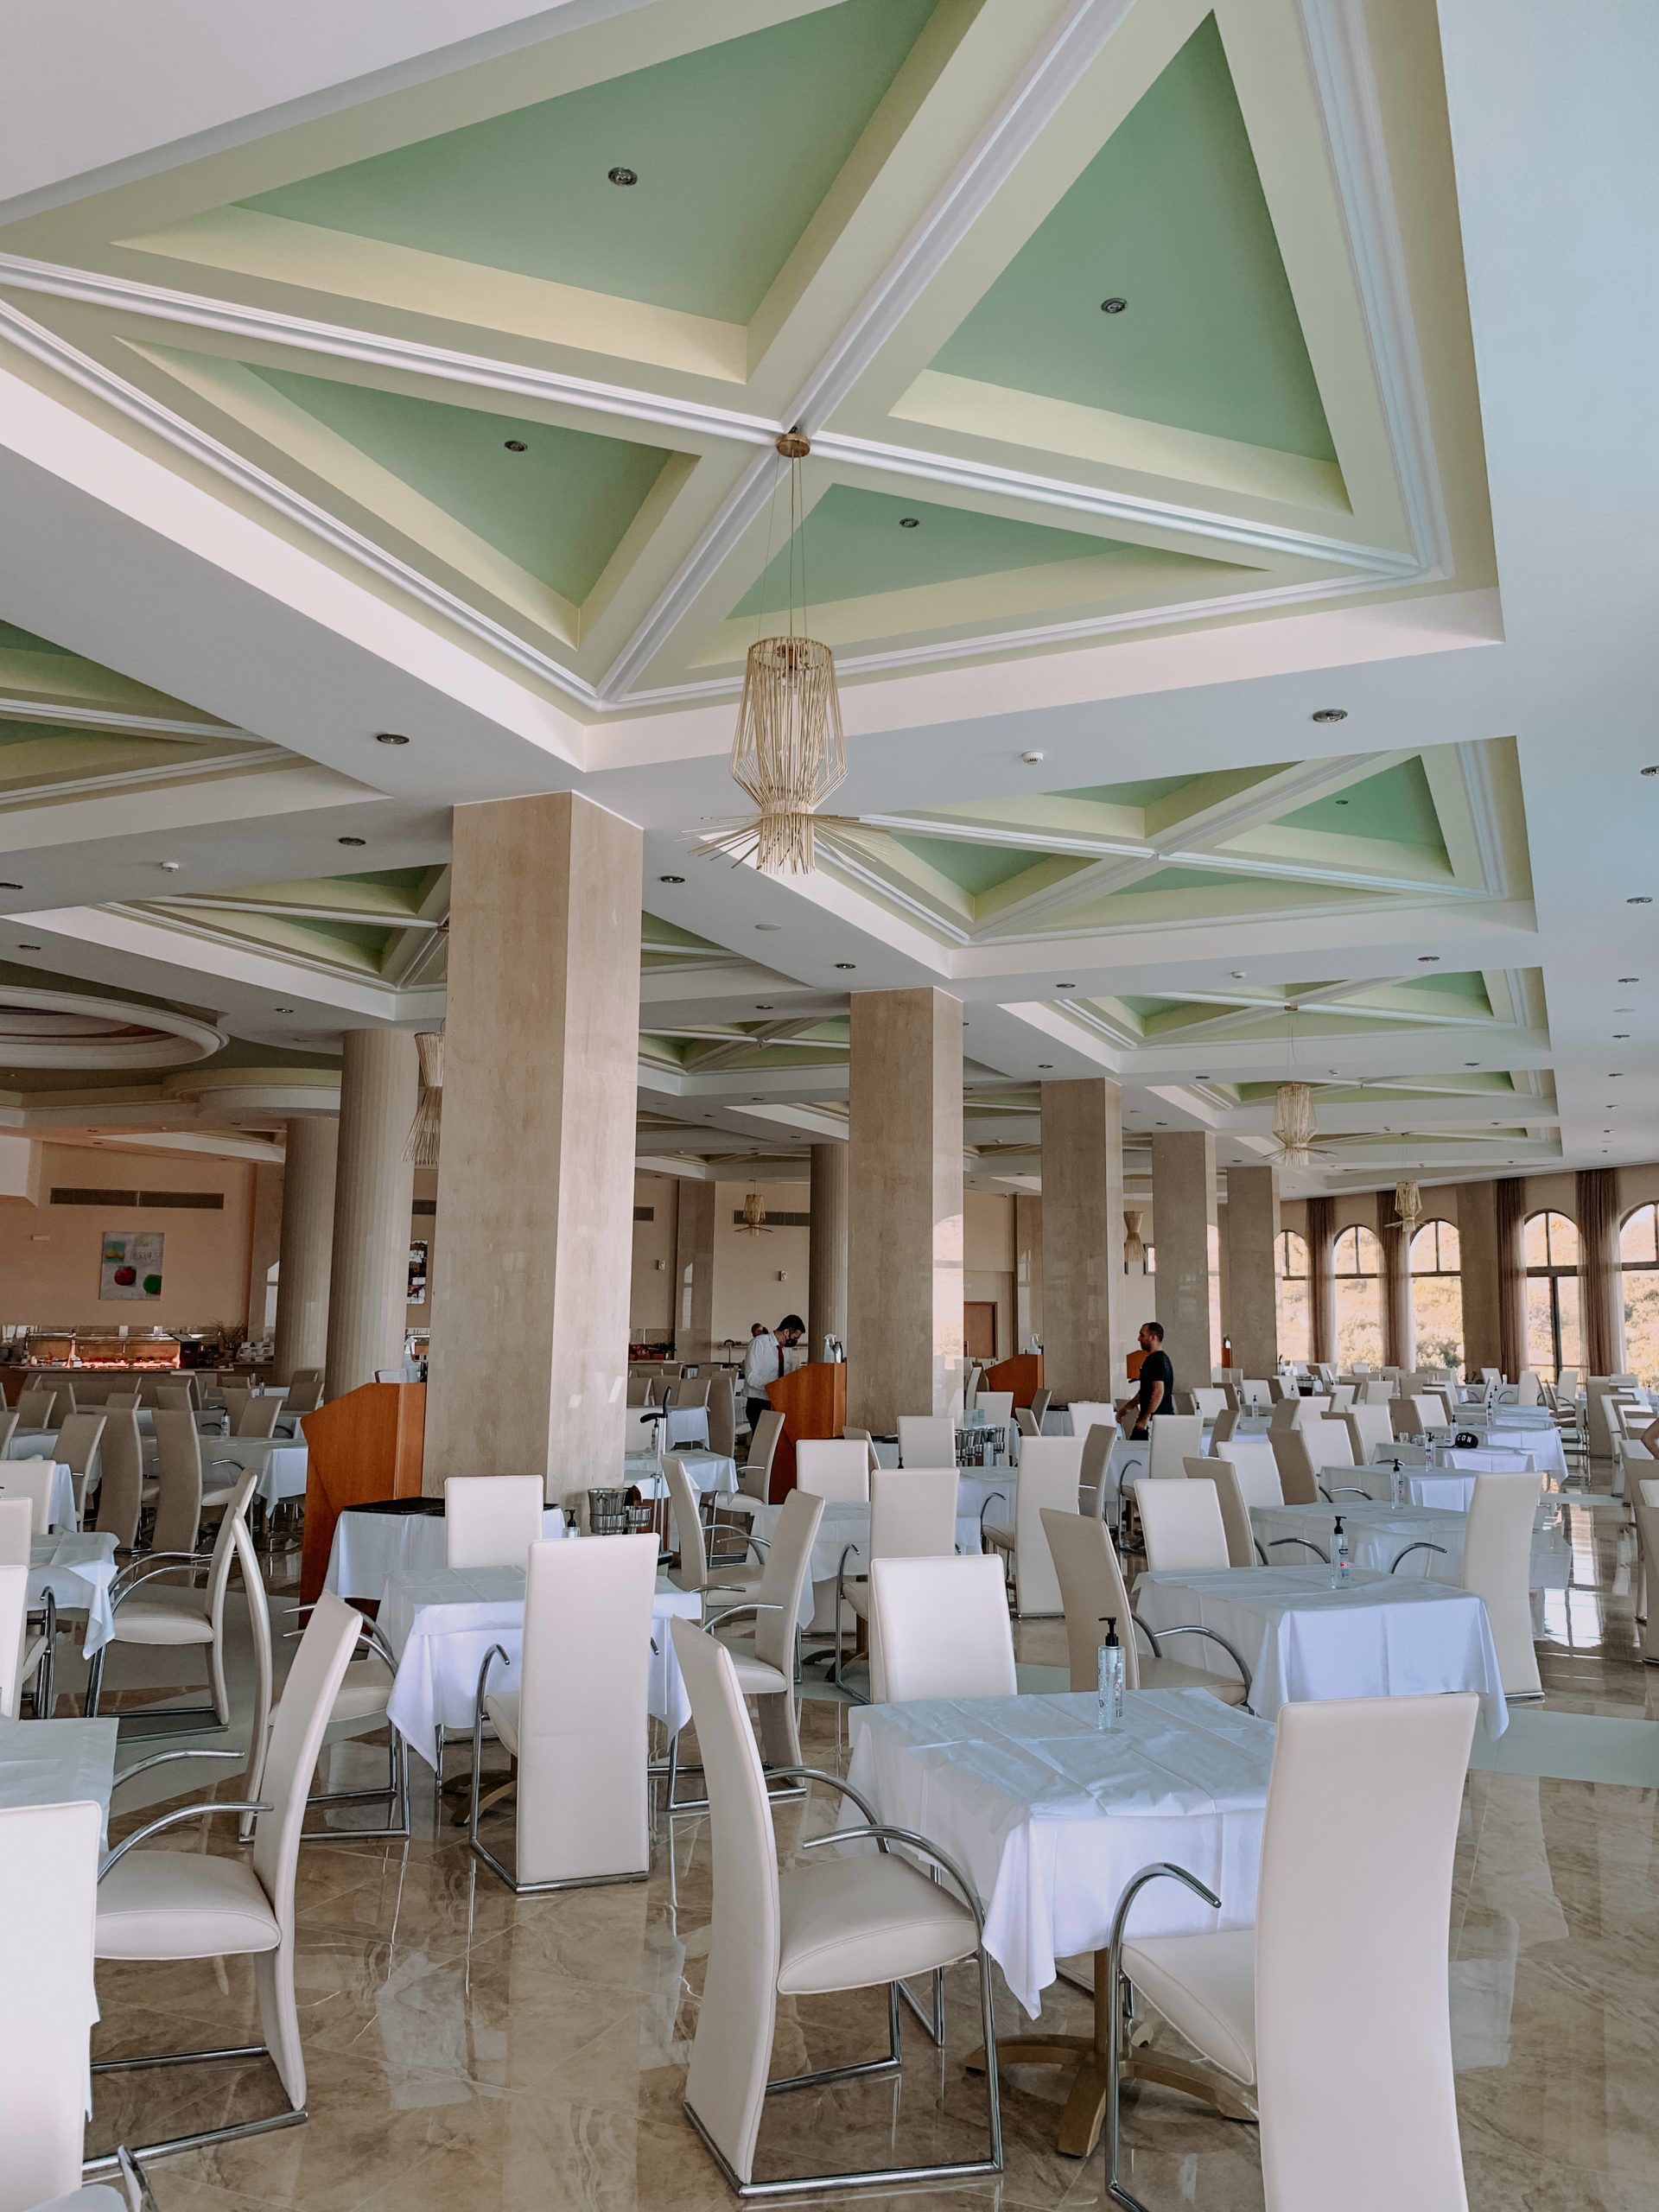 Holiday in Rhodes, Greece. Atrium Hotels. Atrium Platinum Resort Hotel & Spa. Best Hotels in Rhodes |ARCHIPELAGOS MAIN RESTAURANT – GOURMET